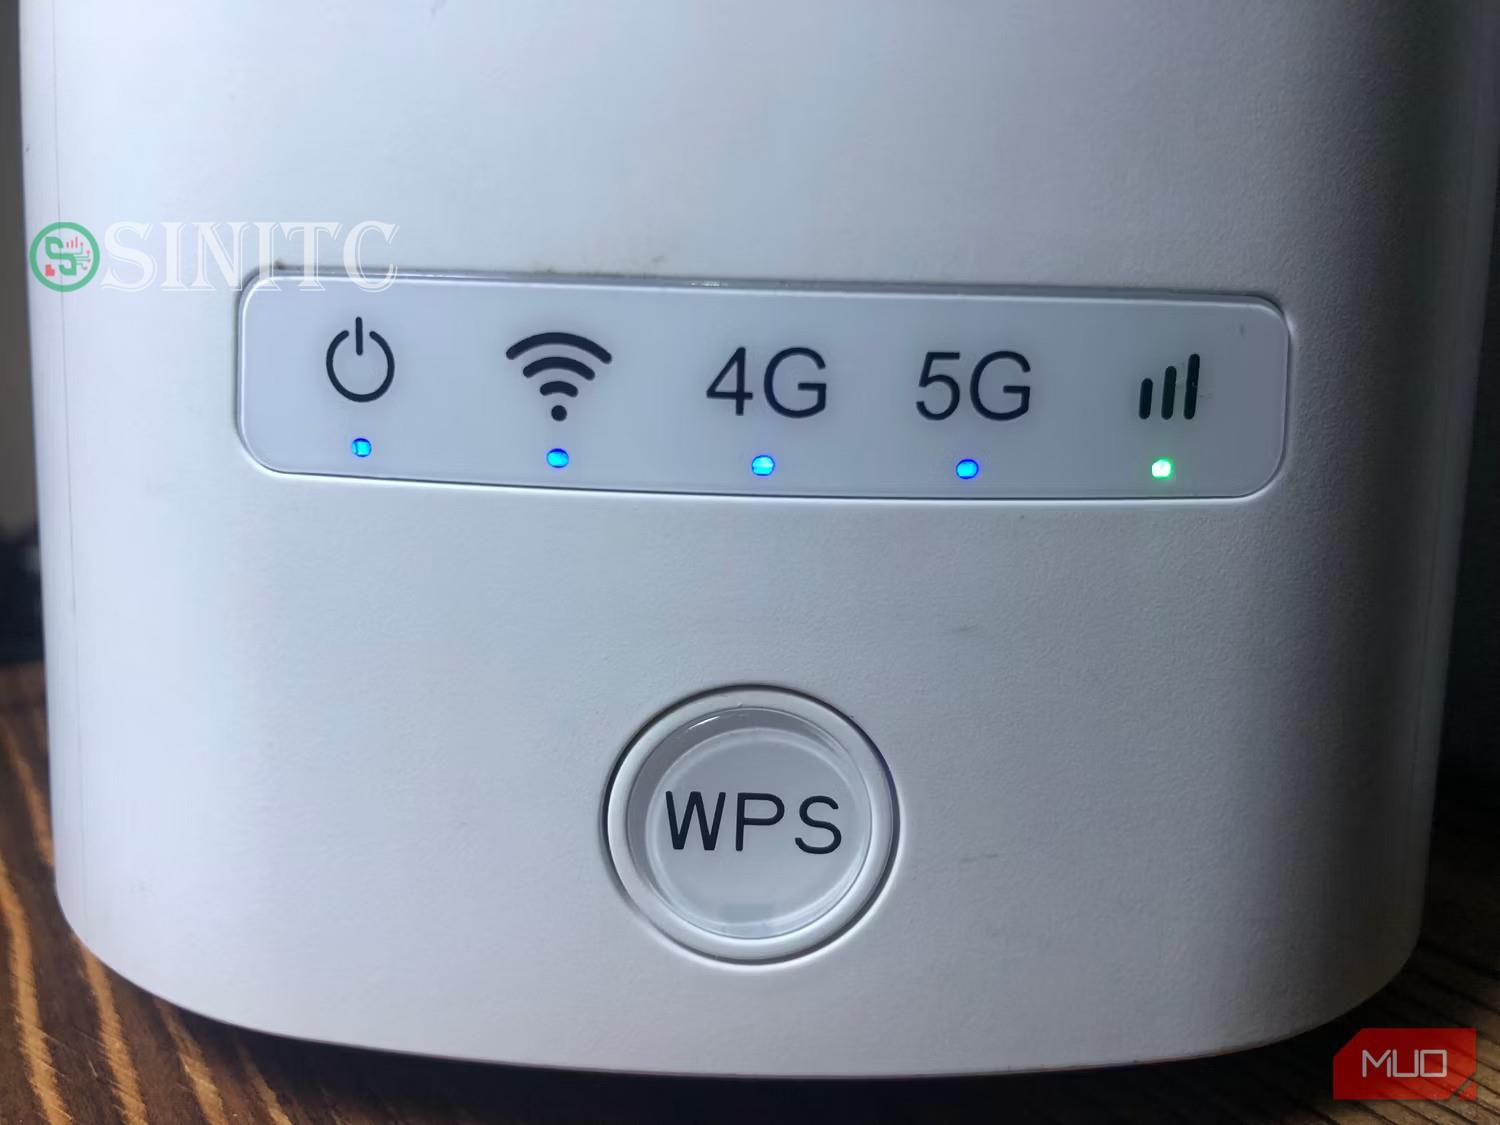 Router màu trắng có nút WPS tròn lớn ở phía trước